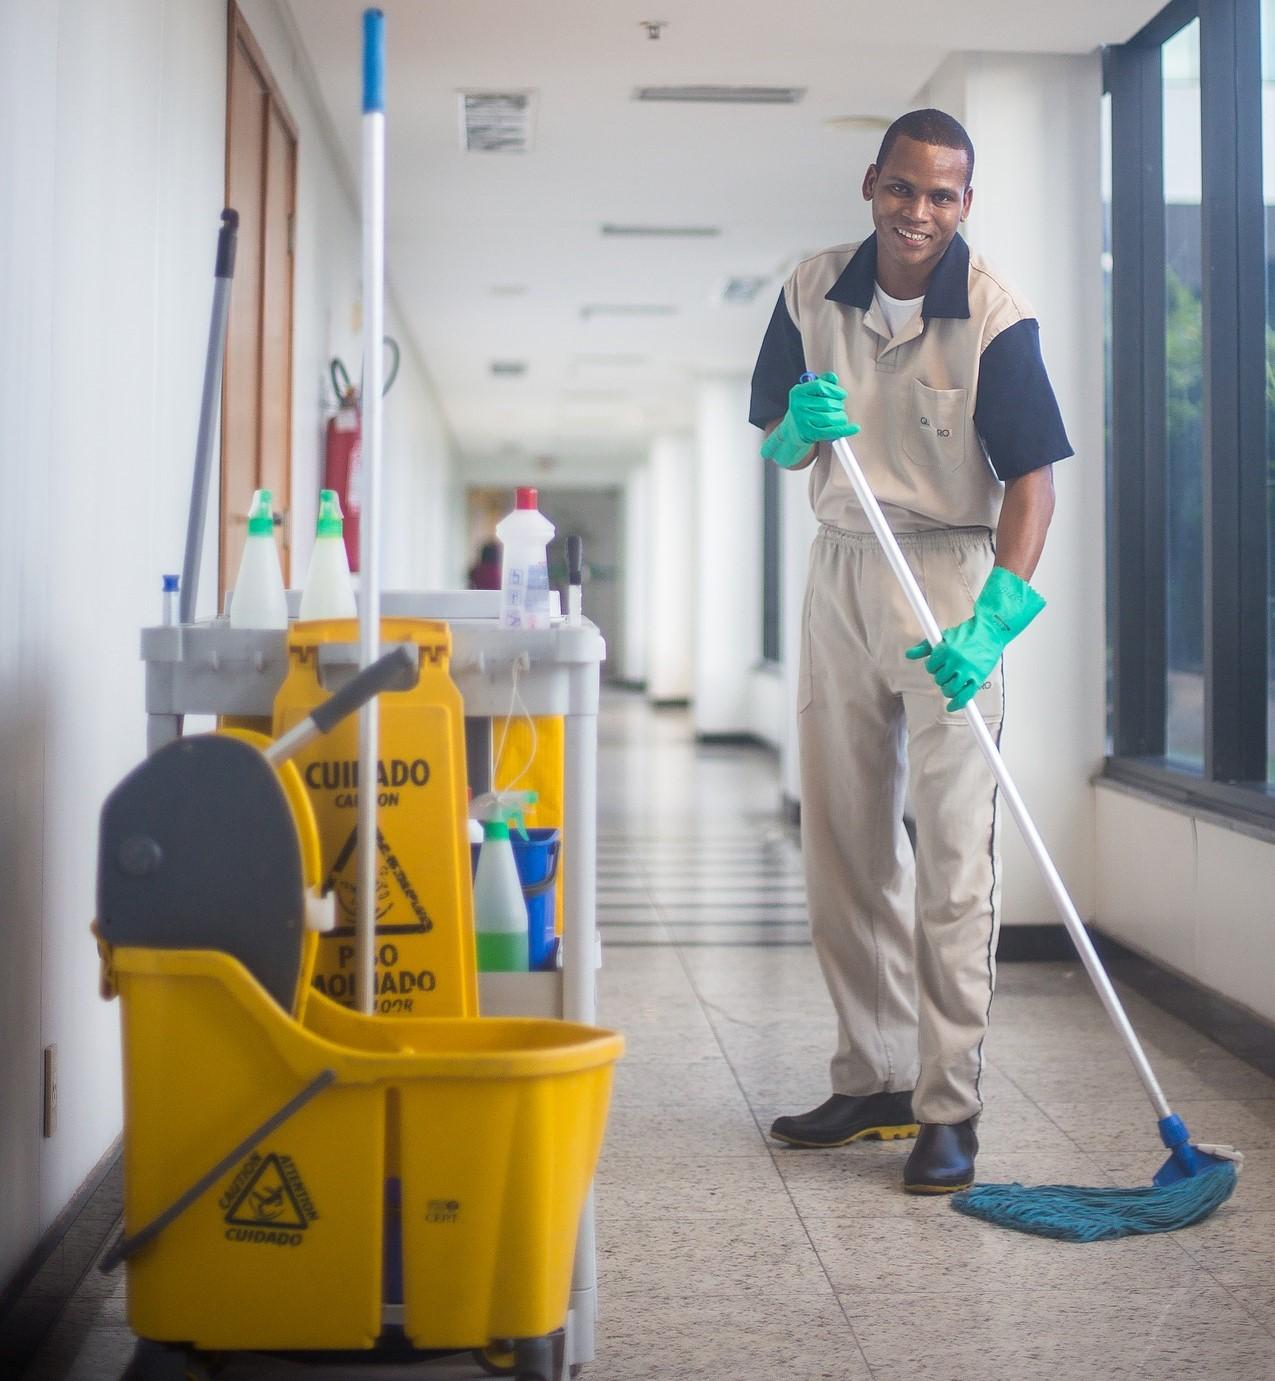 Hotel cleaners jobs in pretoria